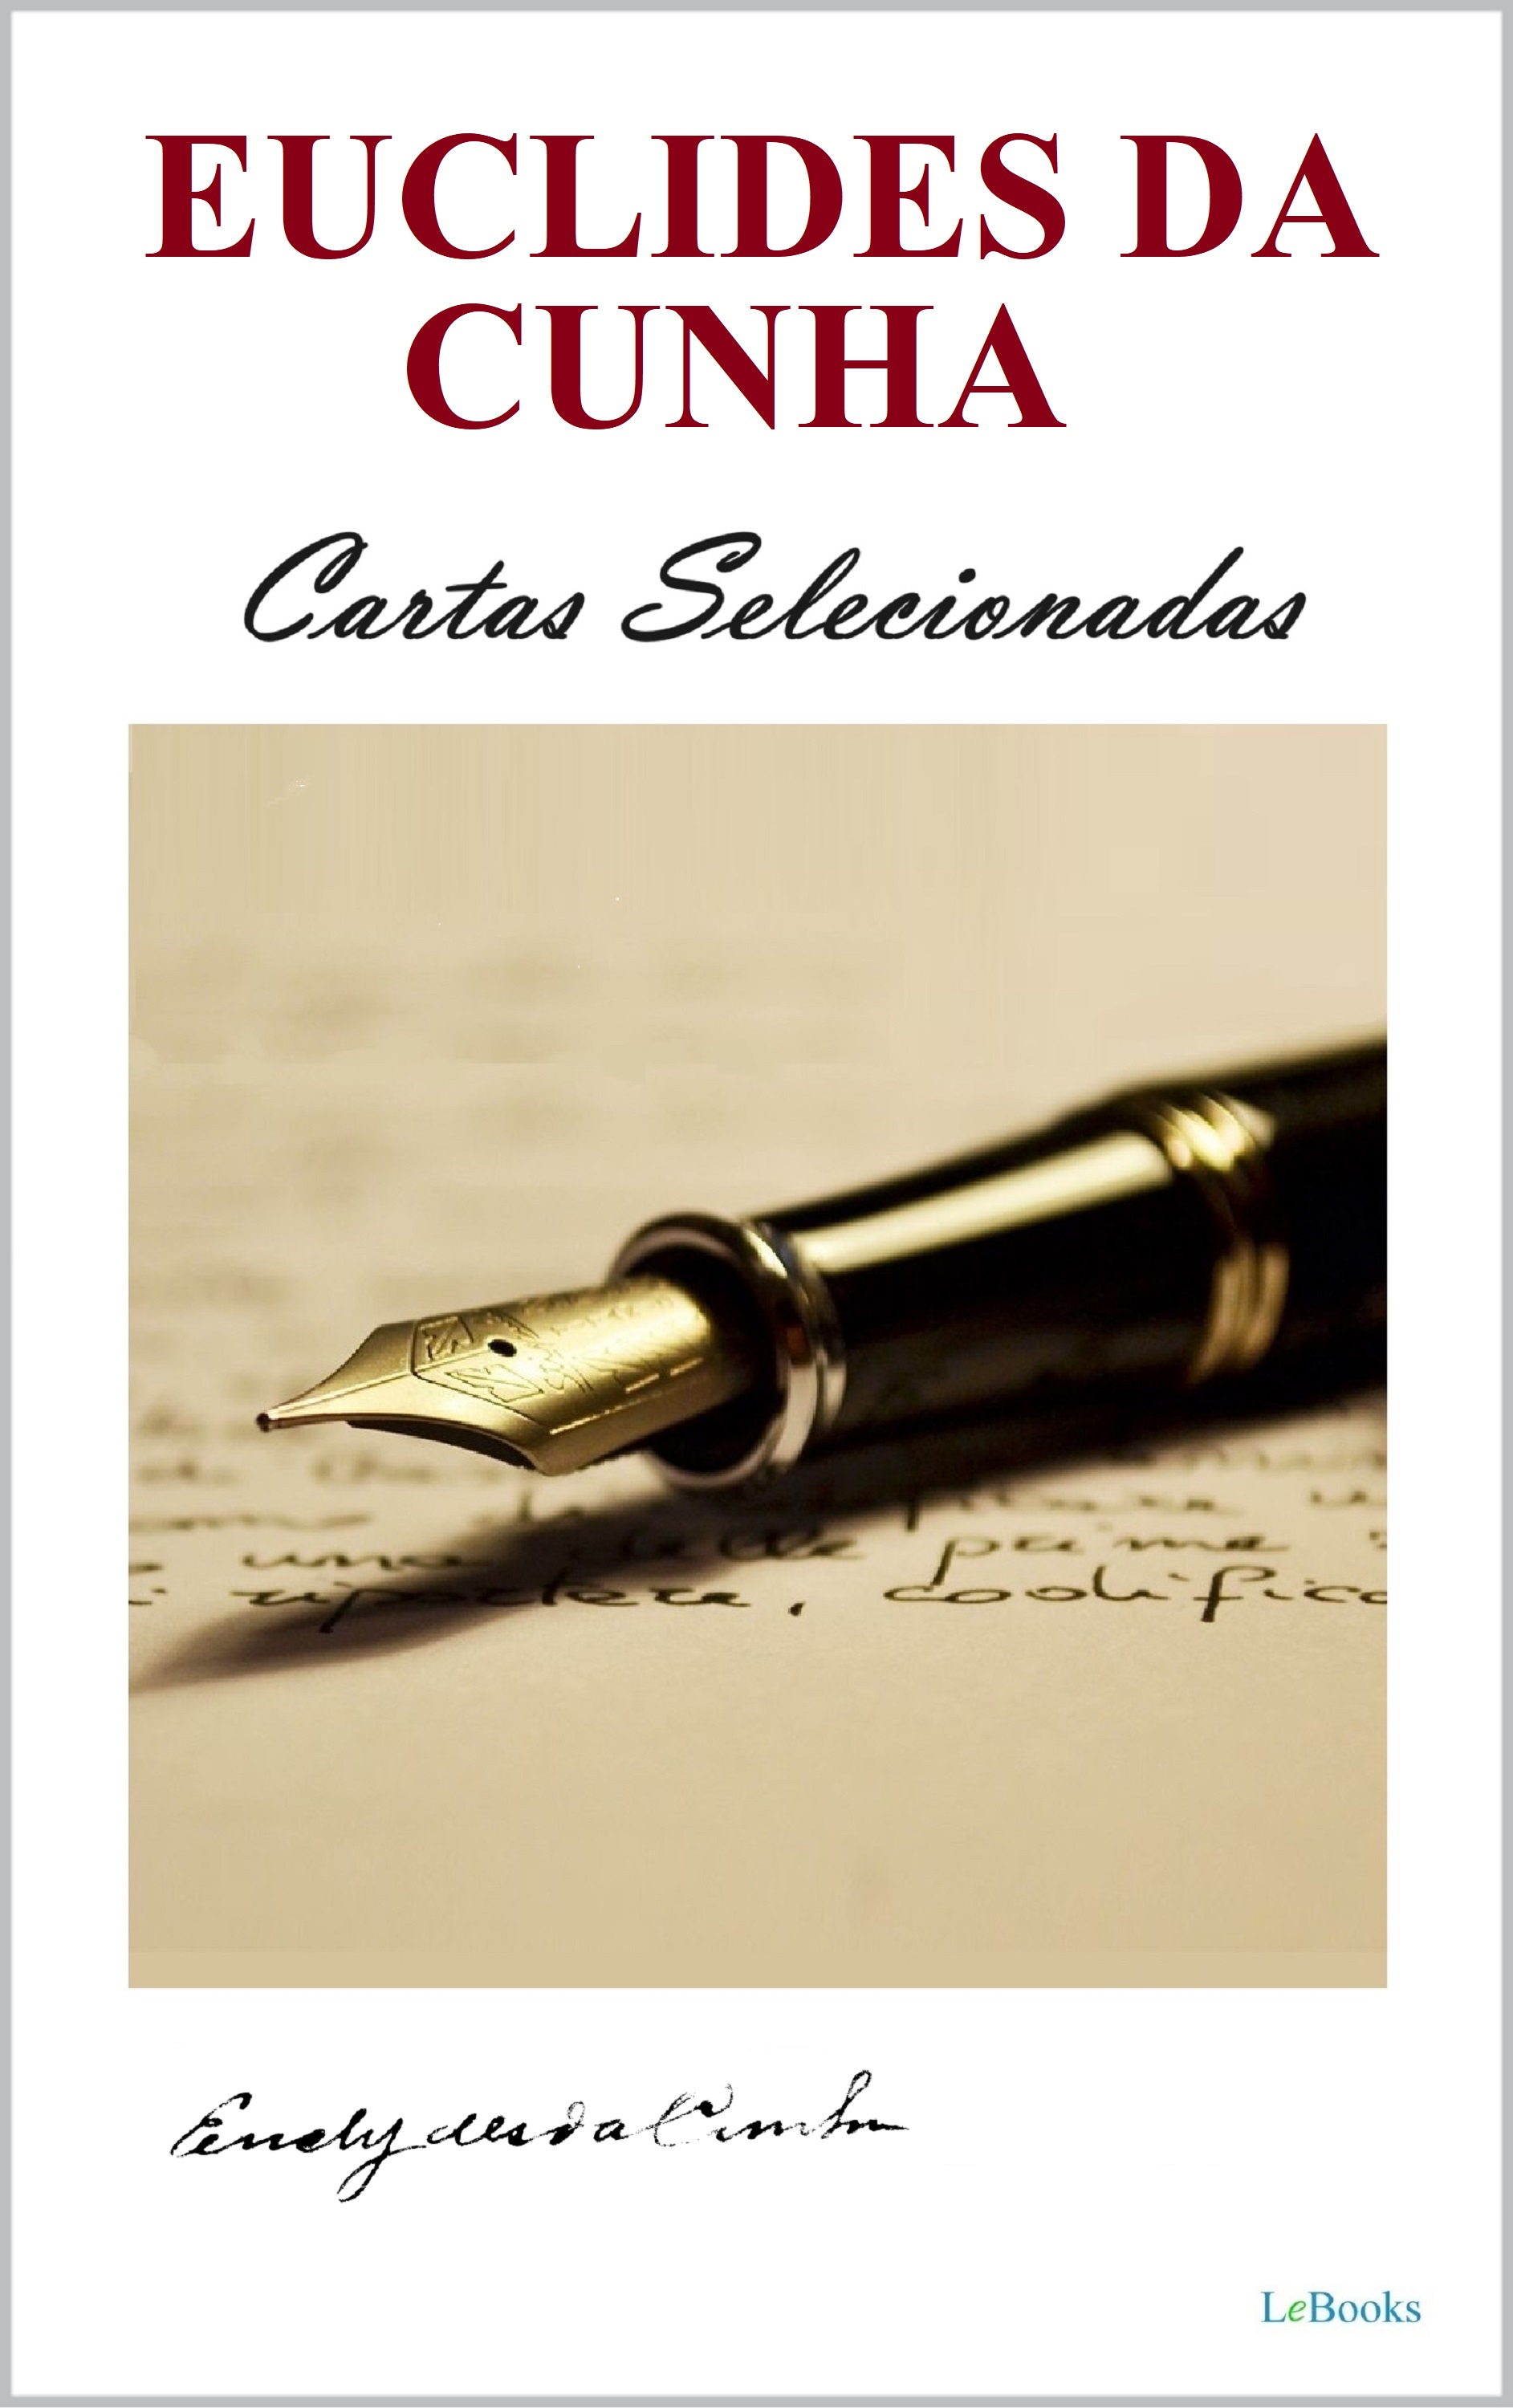 Euclides da Cunha: Cartas Selecionadas